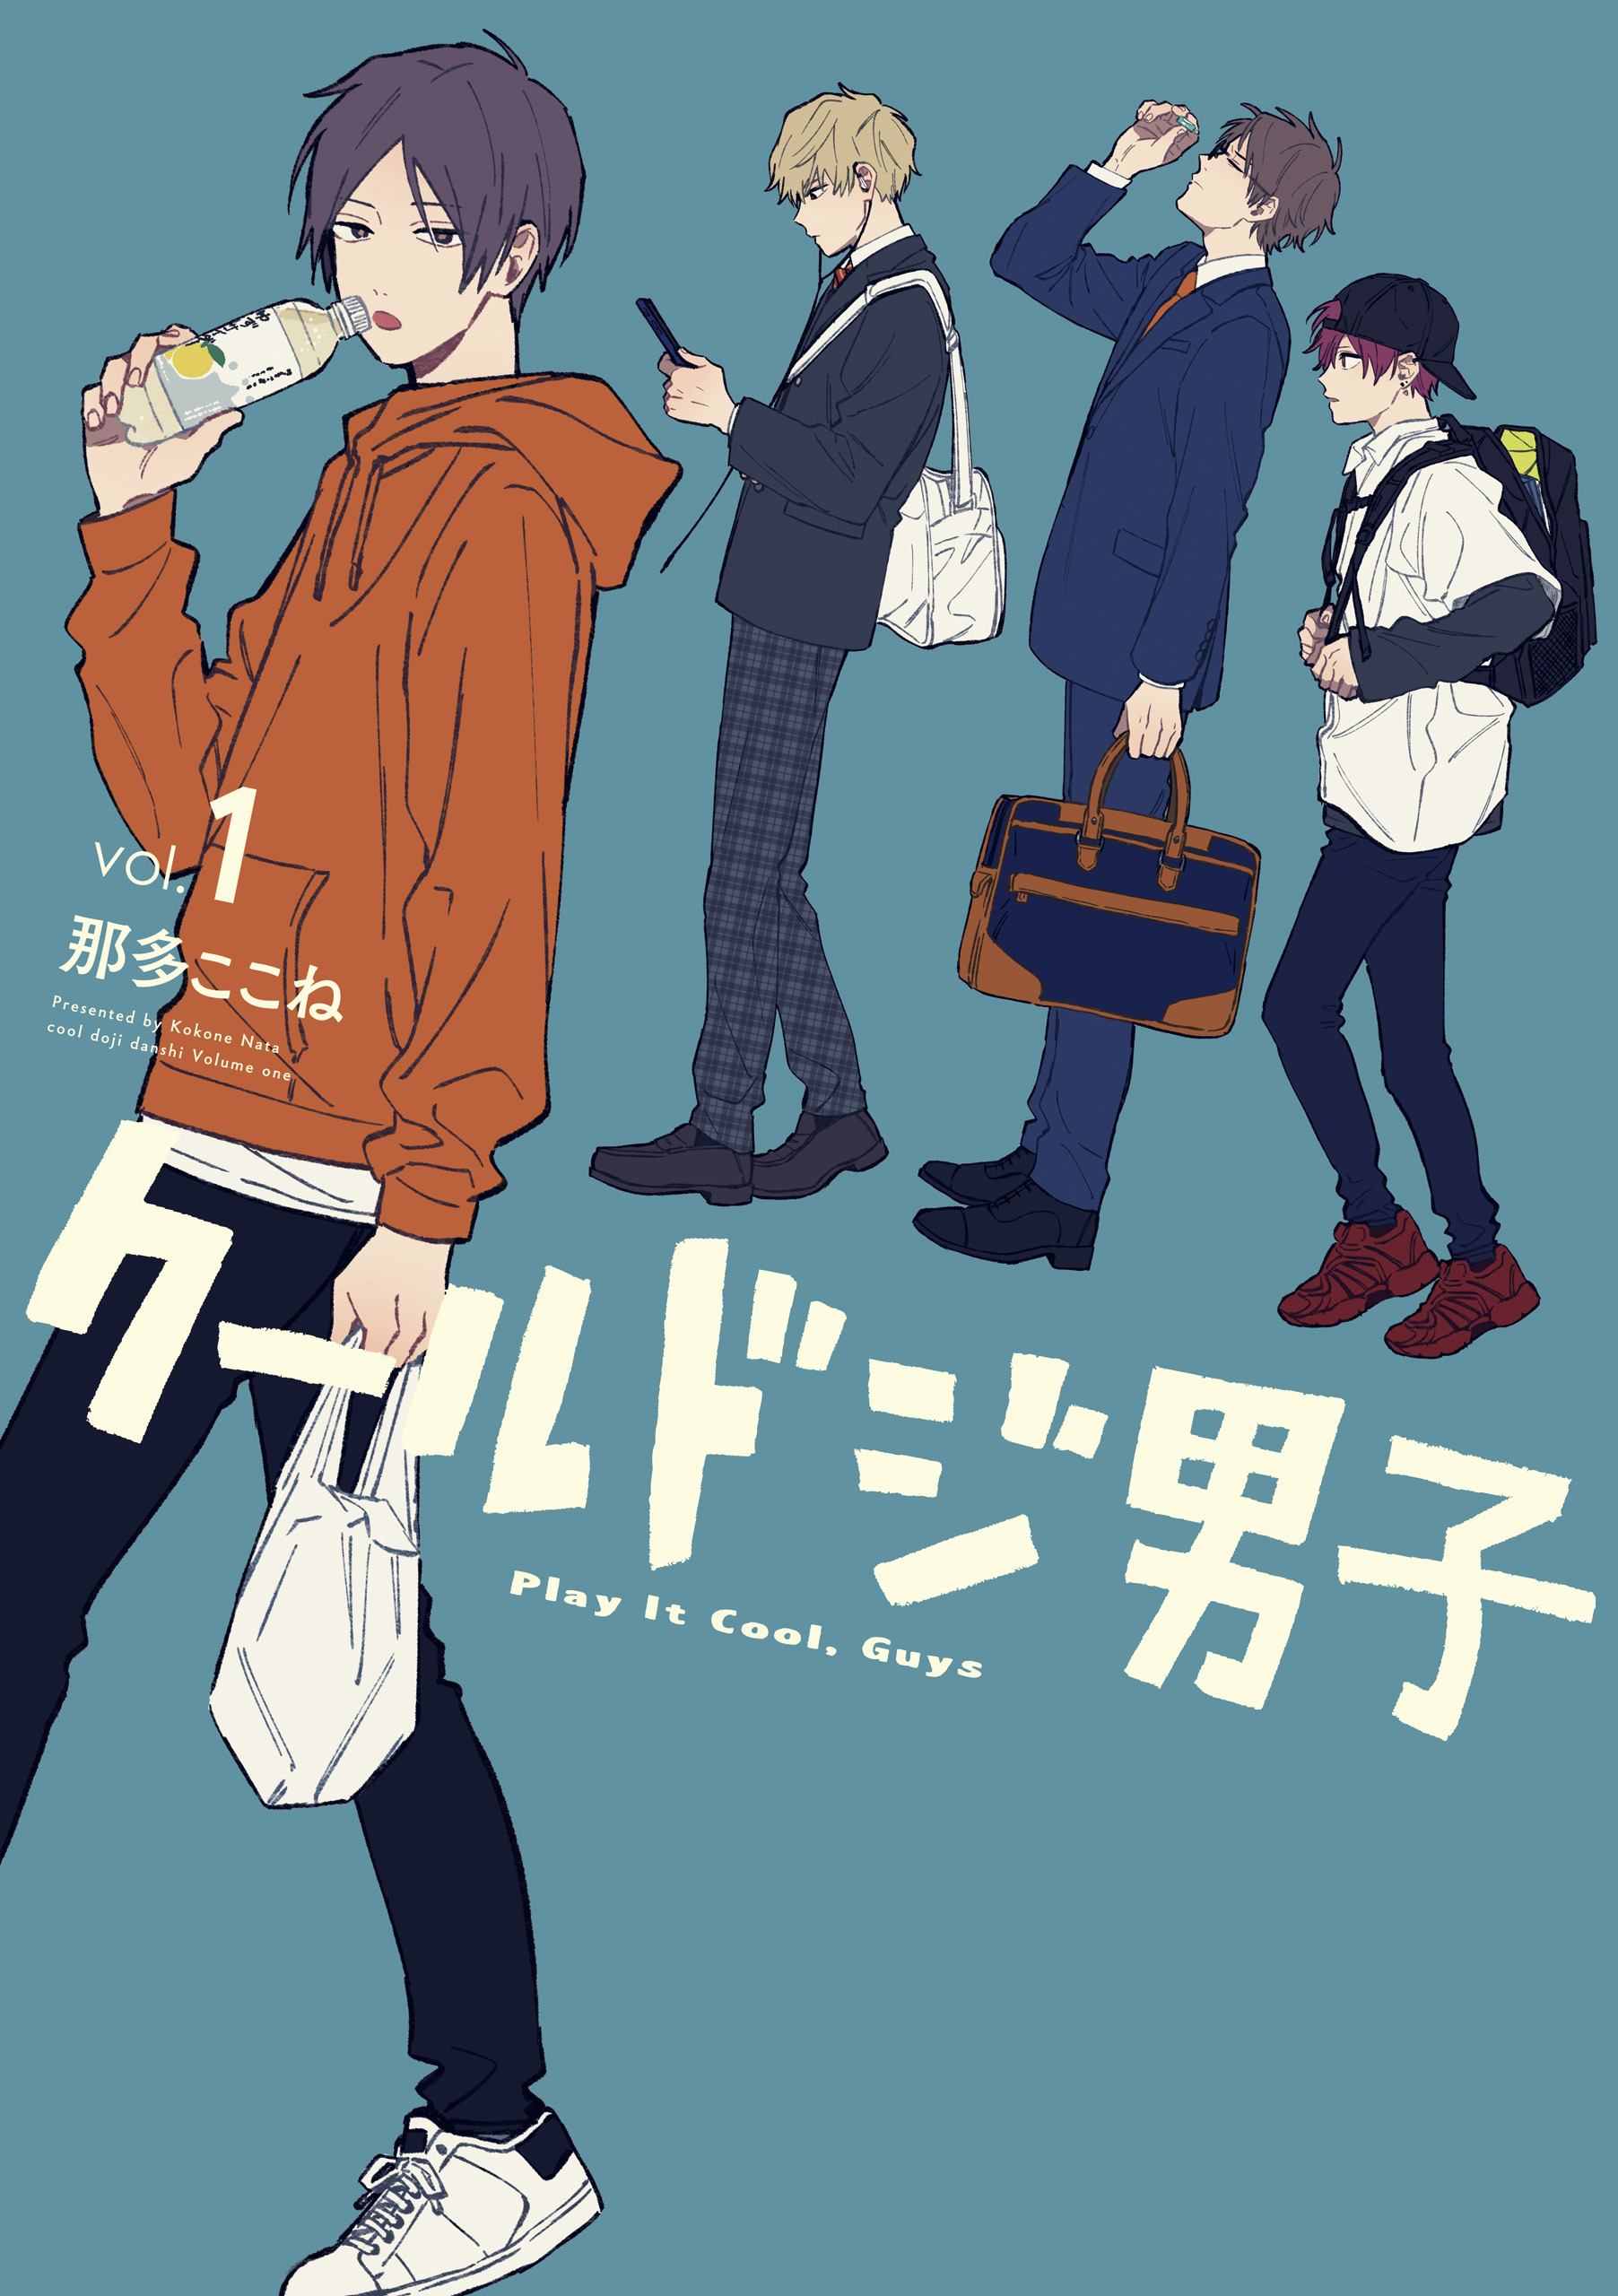 ハズキ 🍀 on X: Nata Kokone's manga Cool Doji Danshi to gets drama  adaptation by TV Tokyo in April. A heart-warming daily life story of cool  but clumsy boys who develop friendships.